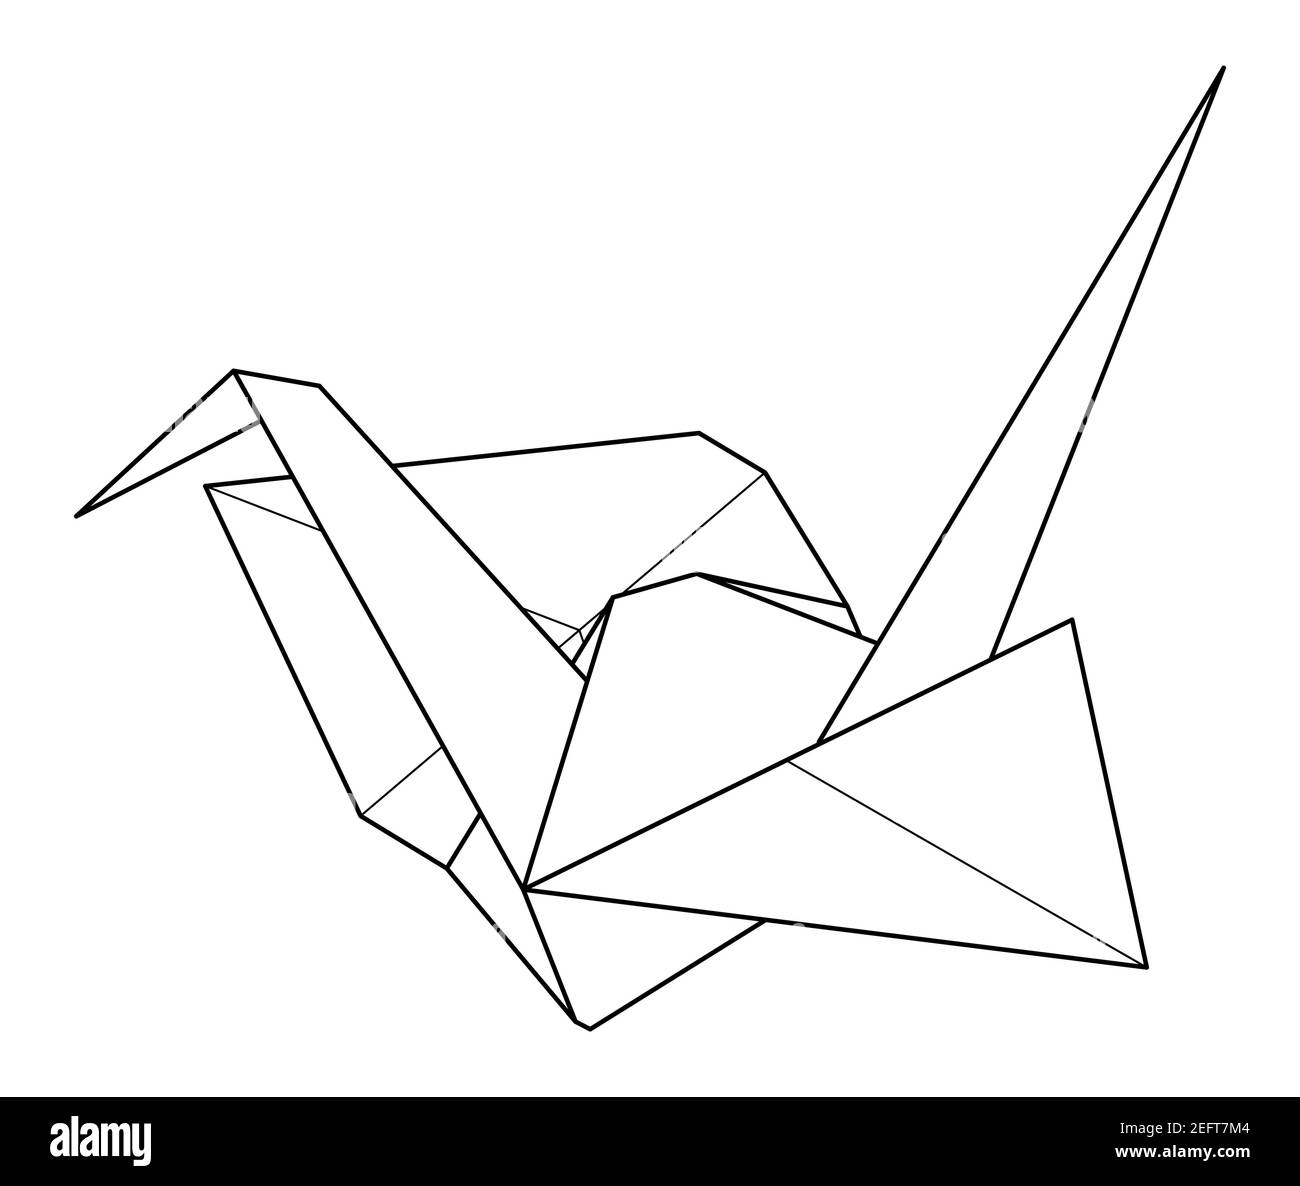 Grulla de papel origami imãgen de stock en blanco y negro